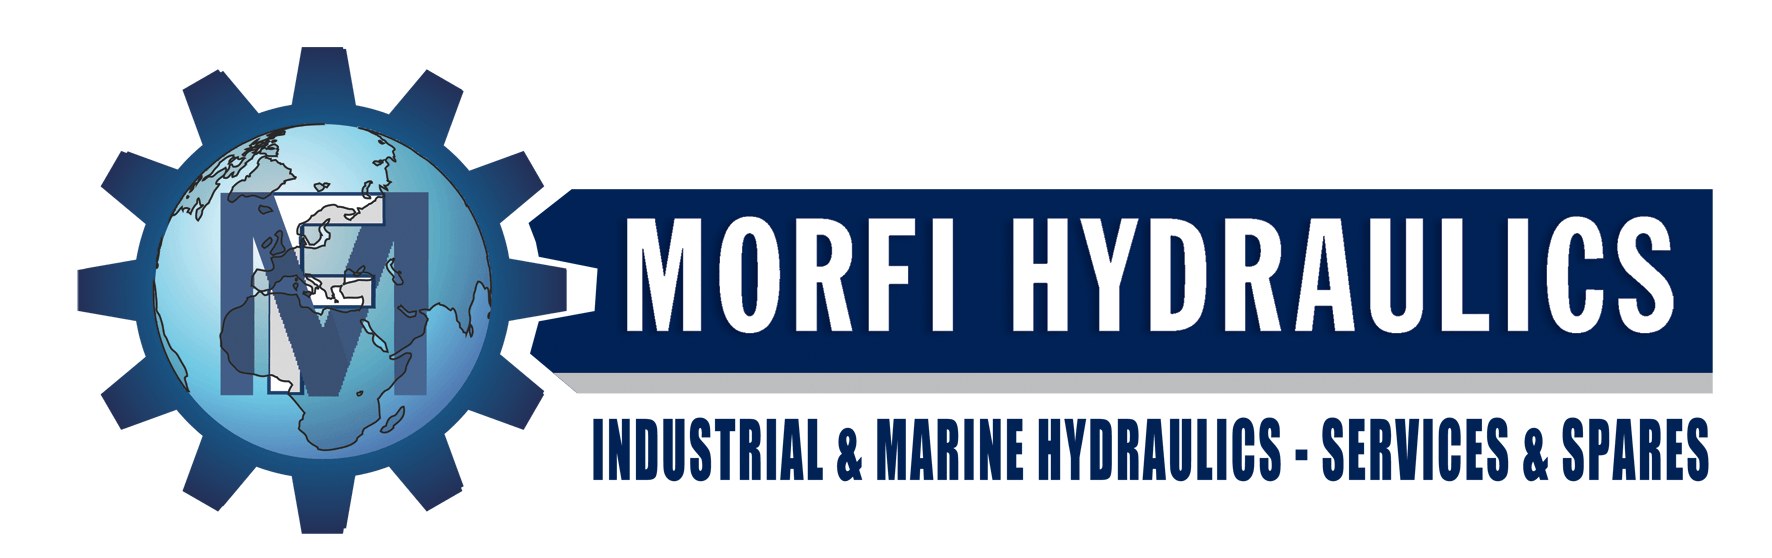 Hydraulics Logo - Morfi-Hydraulics.gr | Industrial and Marine Hydraulics - Morfi ...